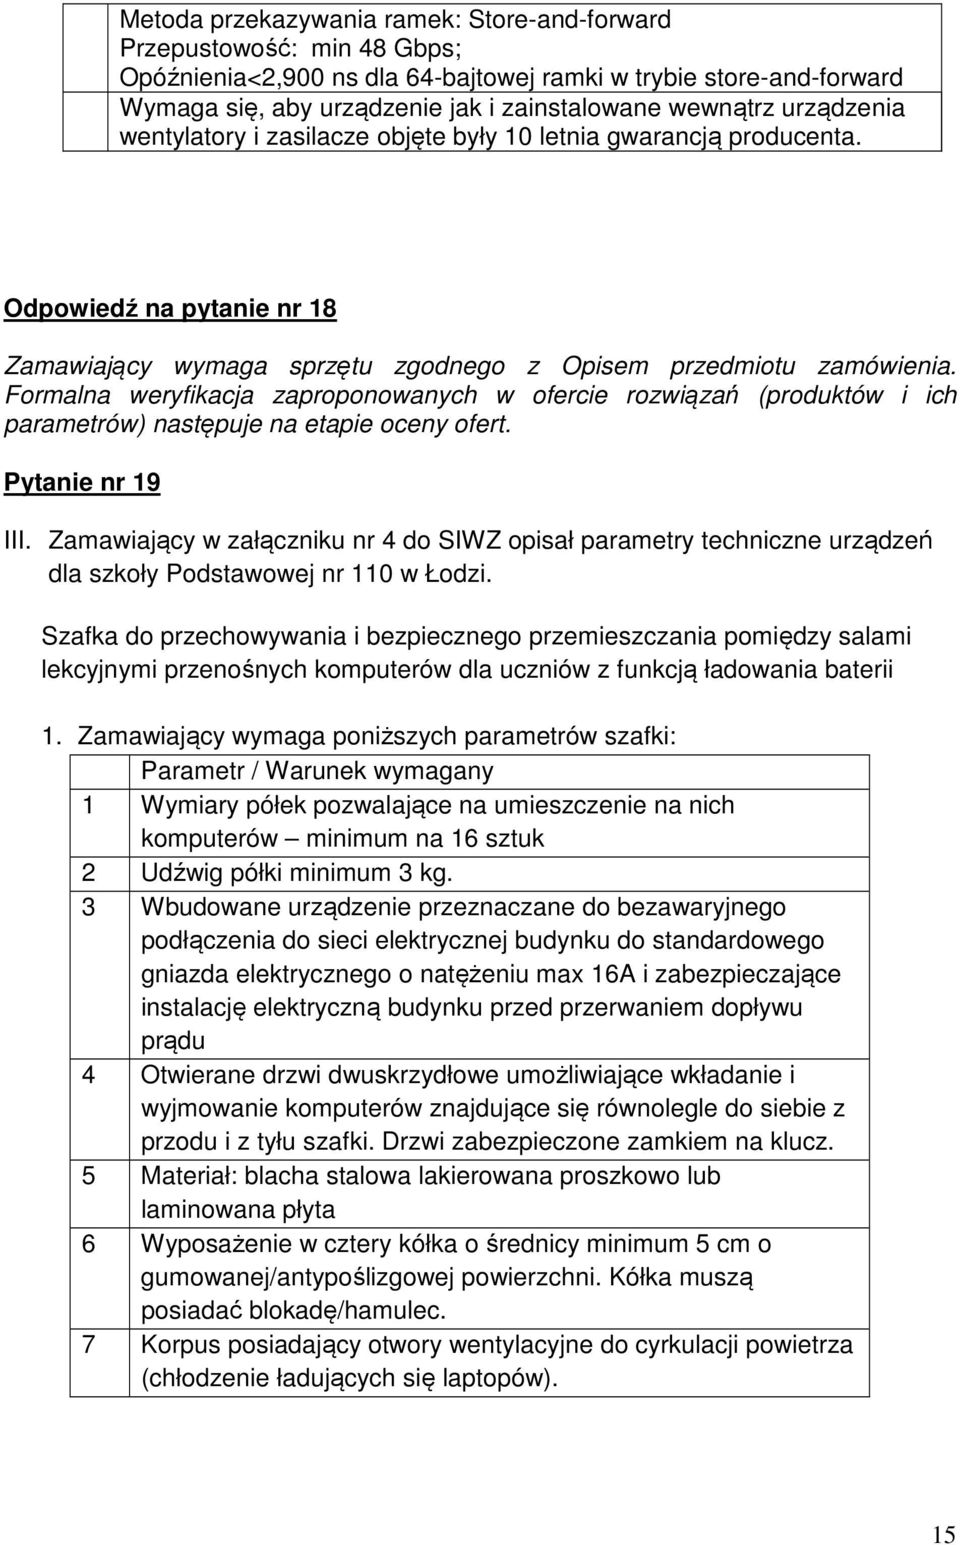 Zamawiający w załączniku nr 4 do SIWZ opisał parametry techniczne urządzeń dla szkoły Podstawowej nr 110 w Łodzi.